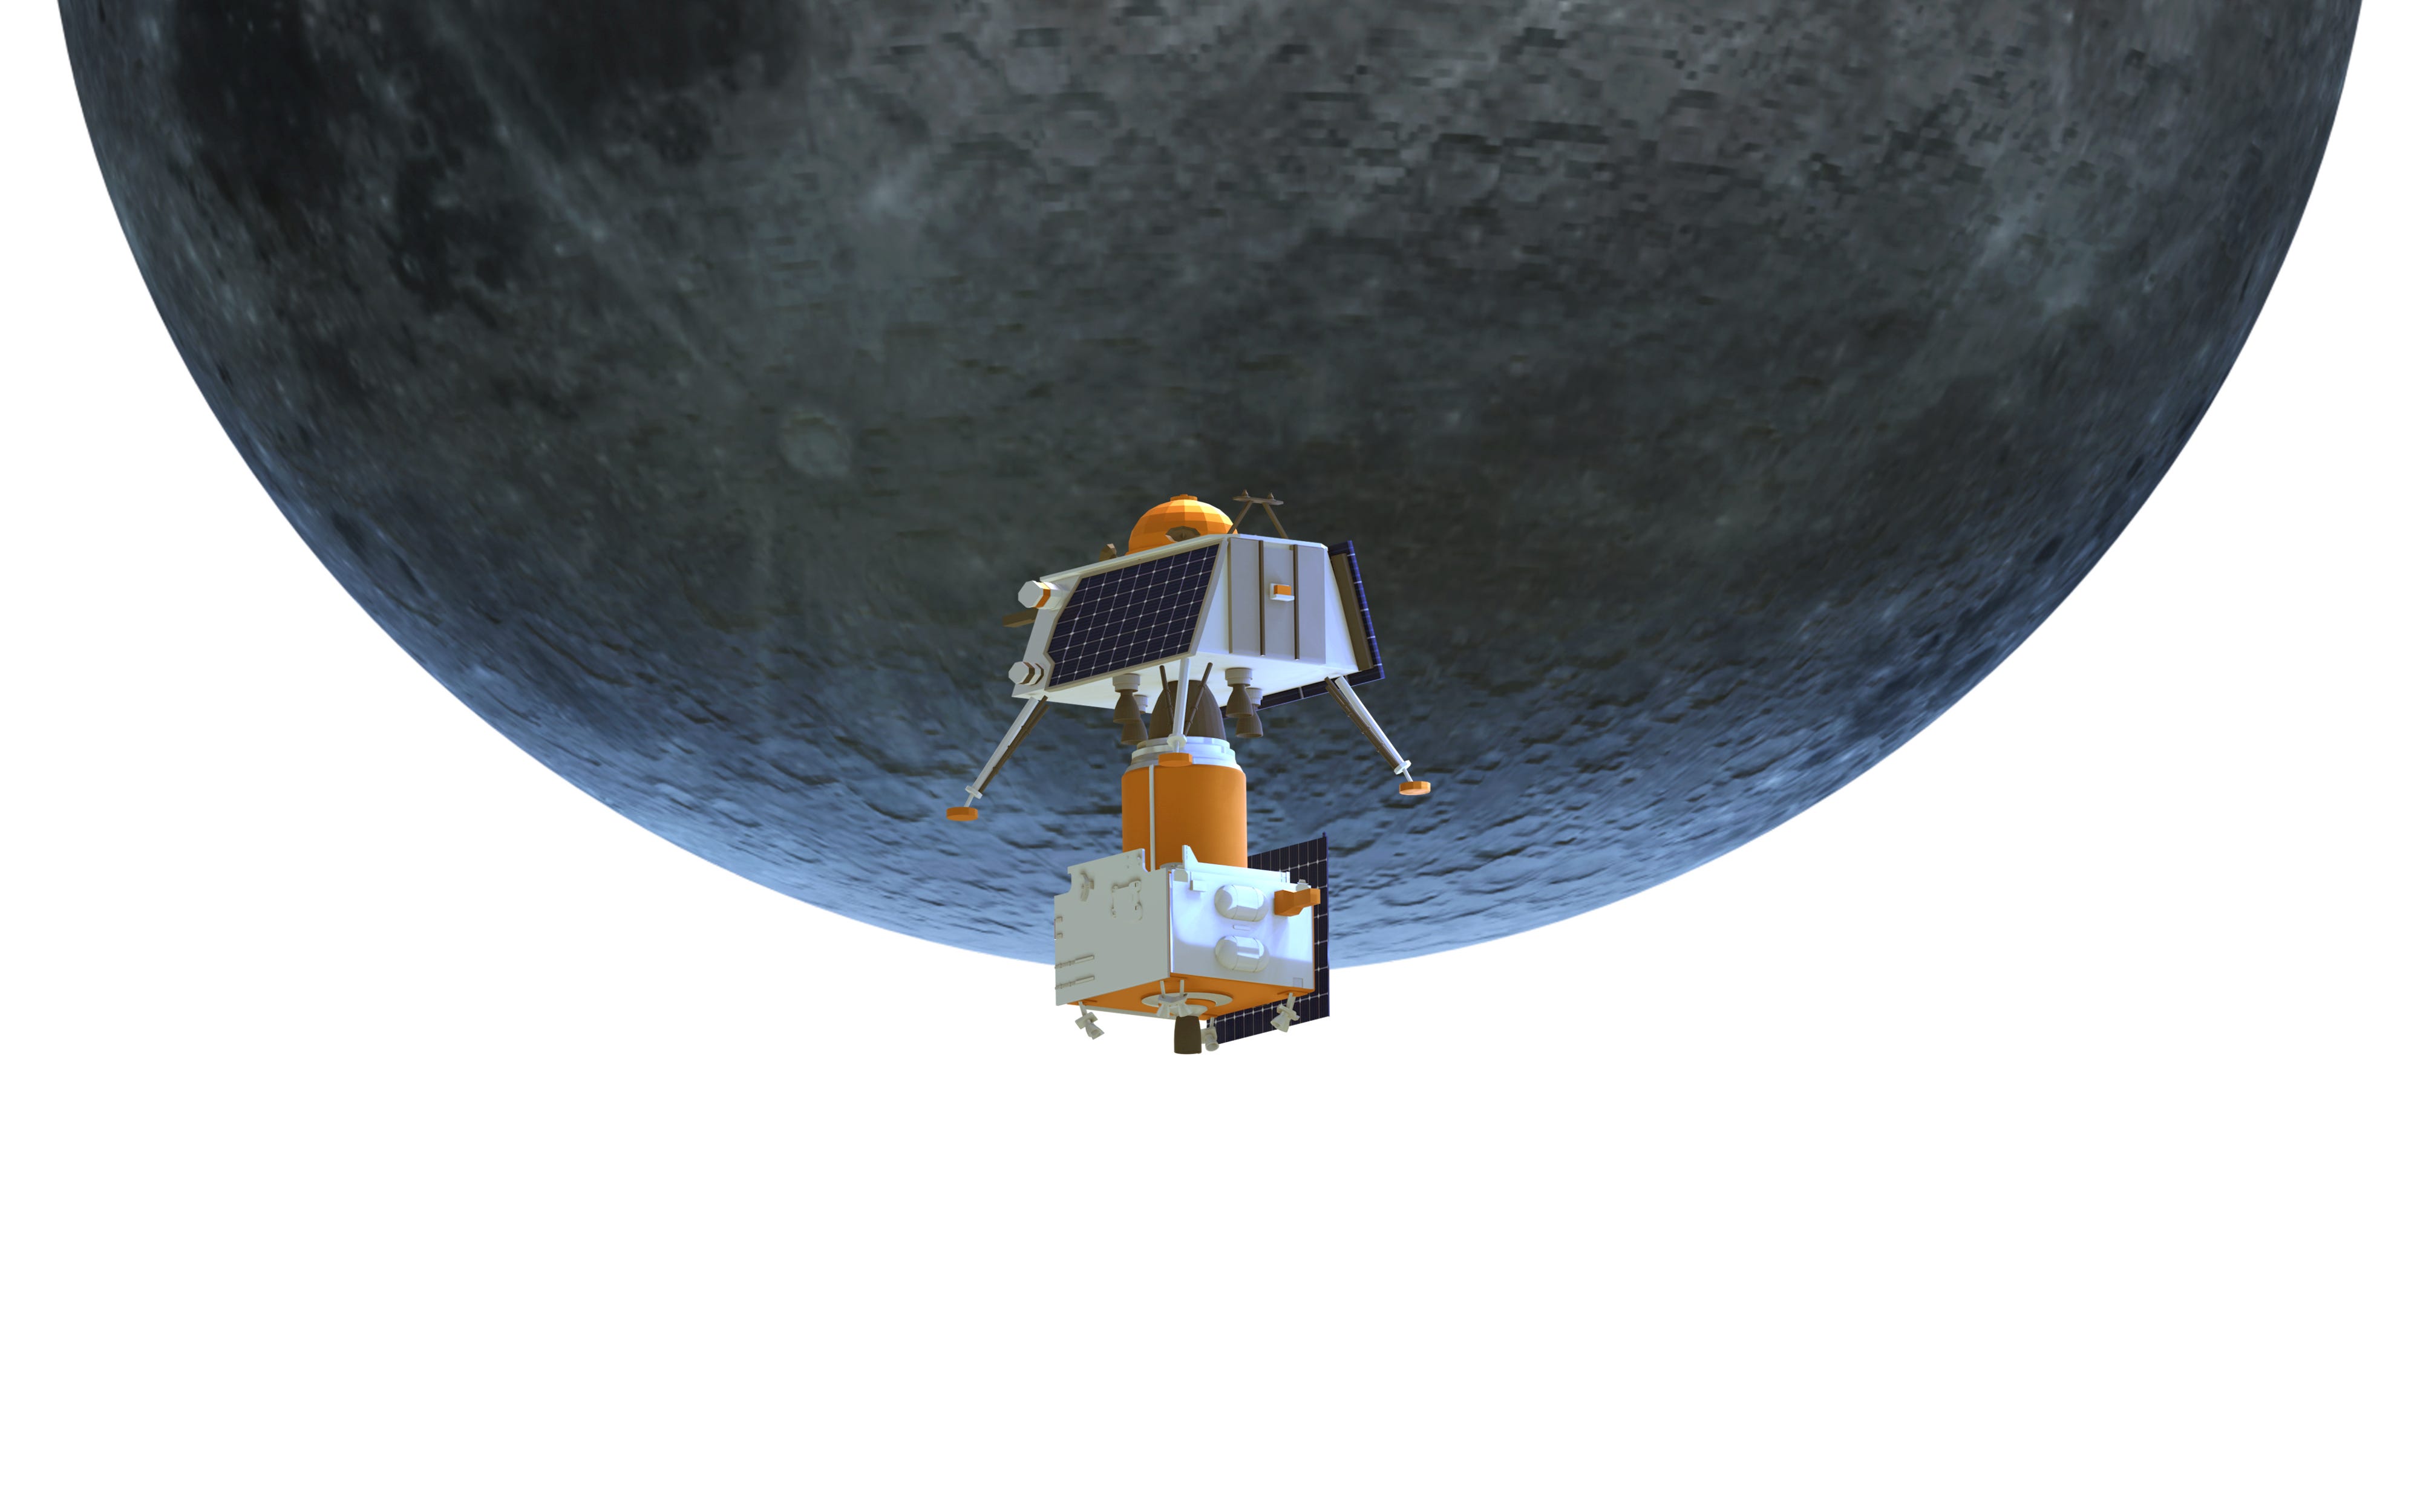 Homing moon. Чандраян 2 сфотографировал Аполлон 12 высокое качество. Moonlander Moon. Луна в Индии.